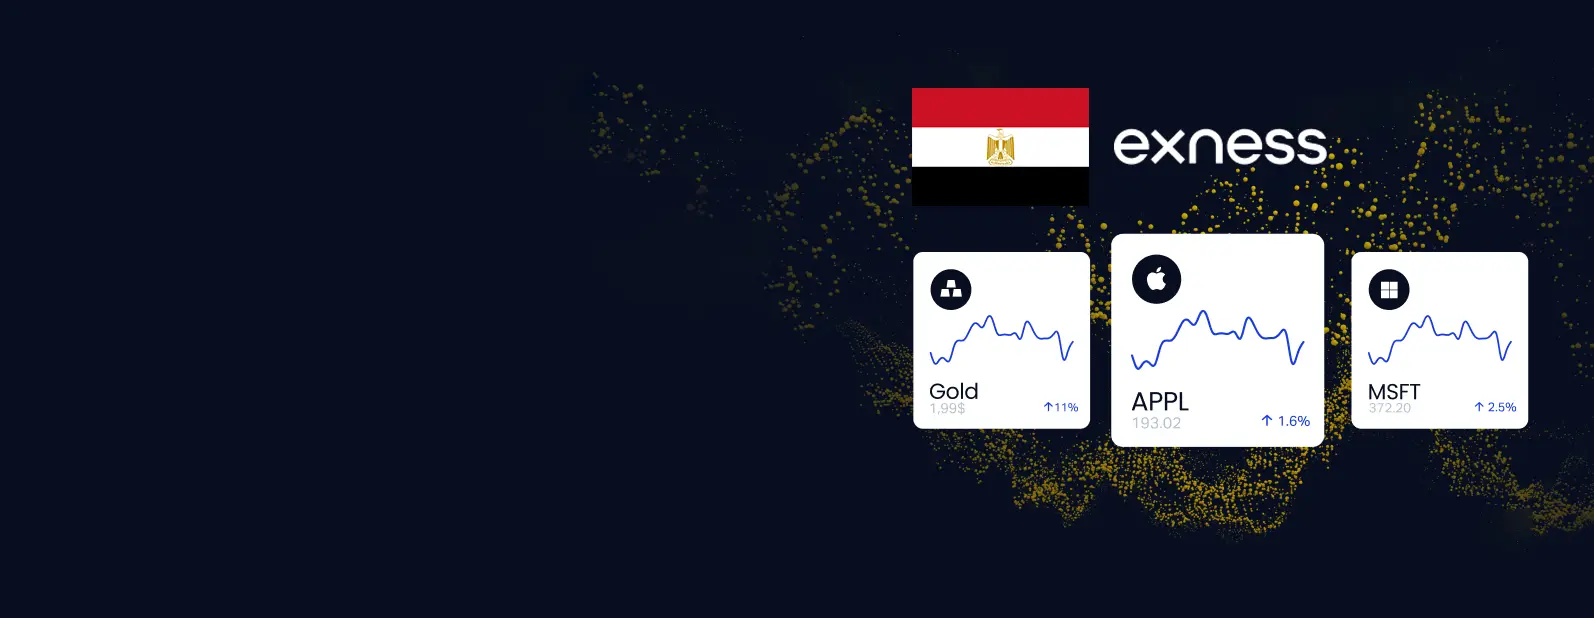 Exness: الوسيط الرائد لتداول العملات الأجنبية والتداول الإلكتروني في مصر